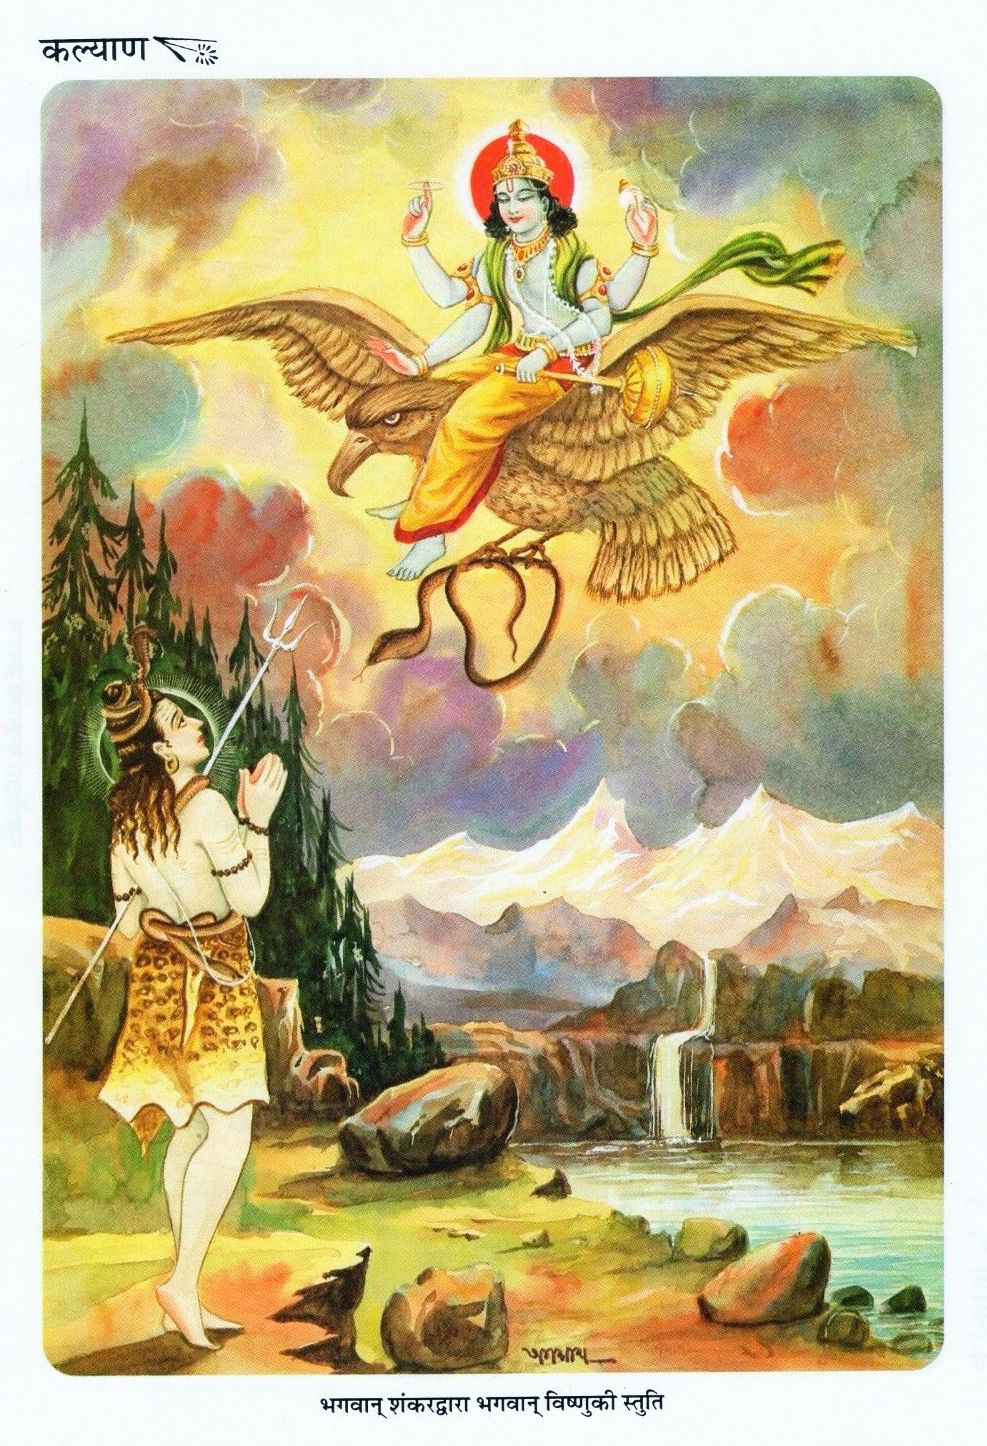 Shiva Vishnu - Lord Shiva and Lord Vishnu on Garuda